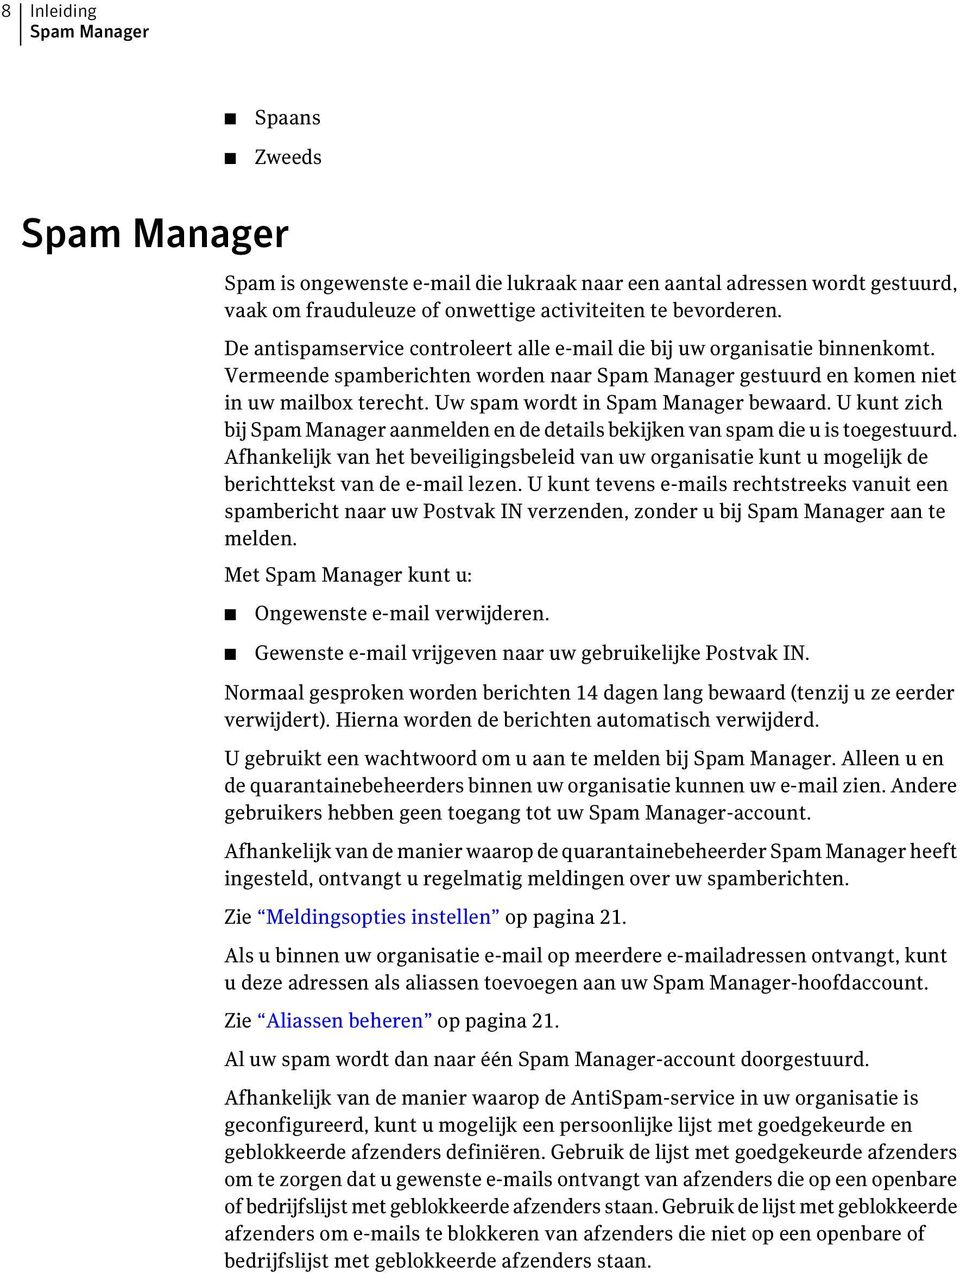 Uw spam wordt in Spam Manager bewaard. U kunt zich bij Spam Manager aanmelden en de details bekijken van spam die u is toegestuurd.